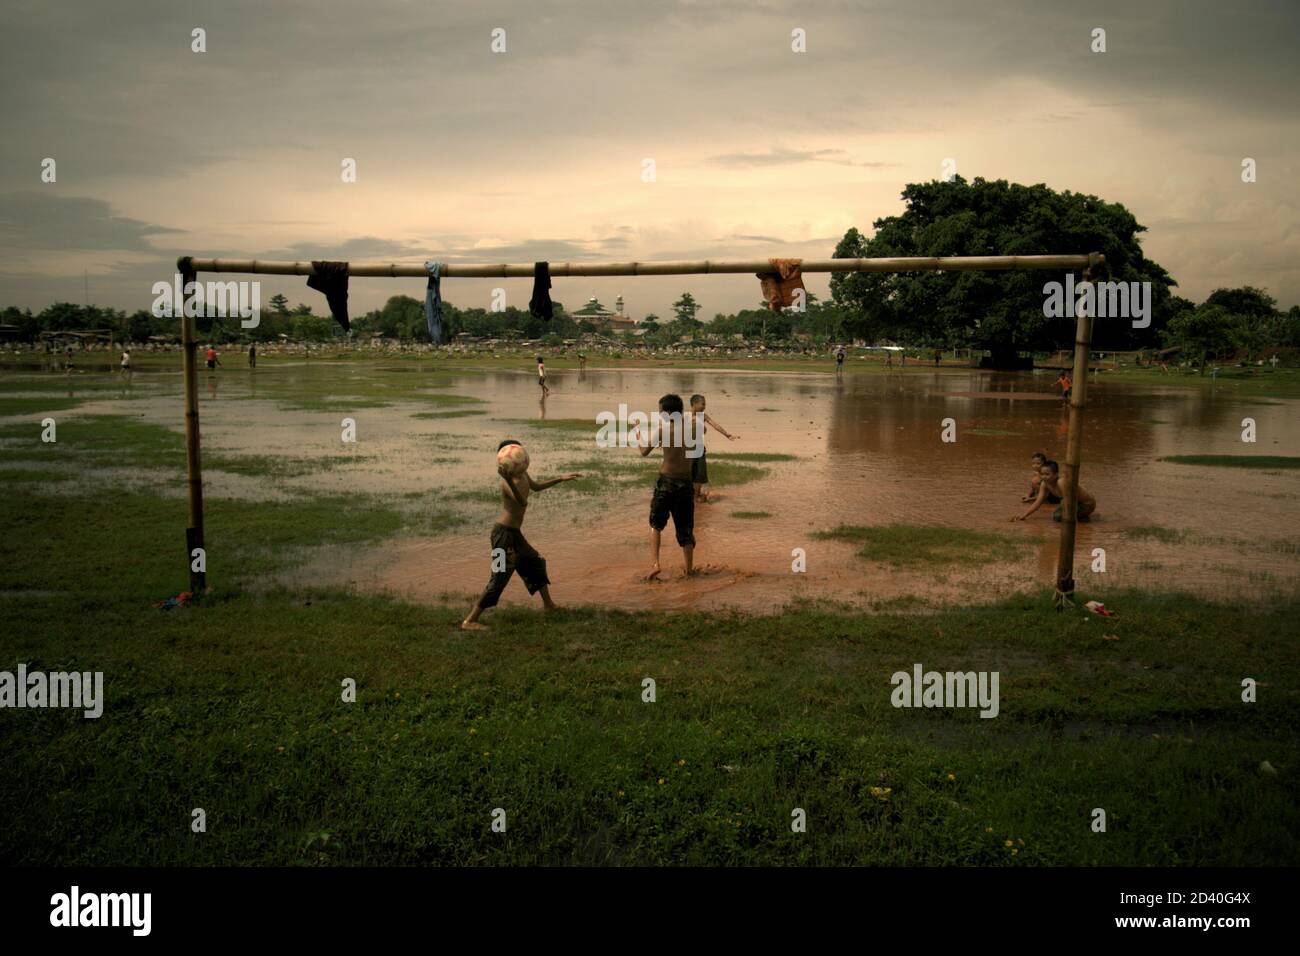 Kinder spielen Fußball auf einem teilweise überfluteten Feld, das sich zwischen zwei öffentlichen Friedhöfen in Pondok Kelapa, Jakarta, Indonesien, befindet. Stockfoto